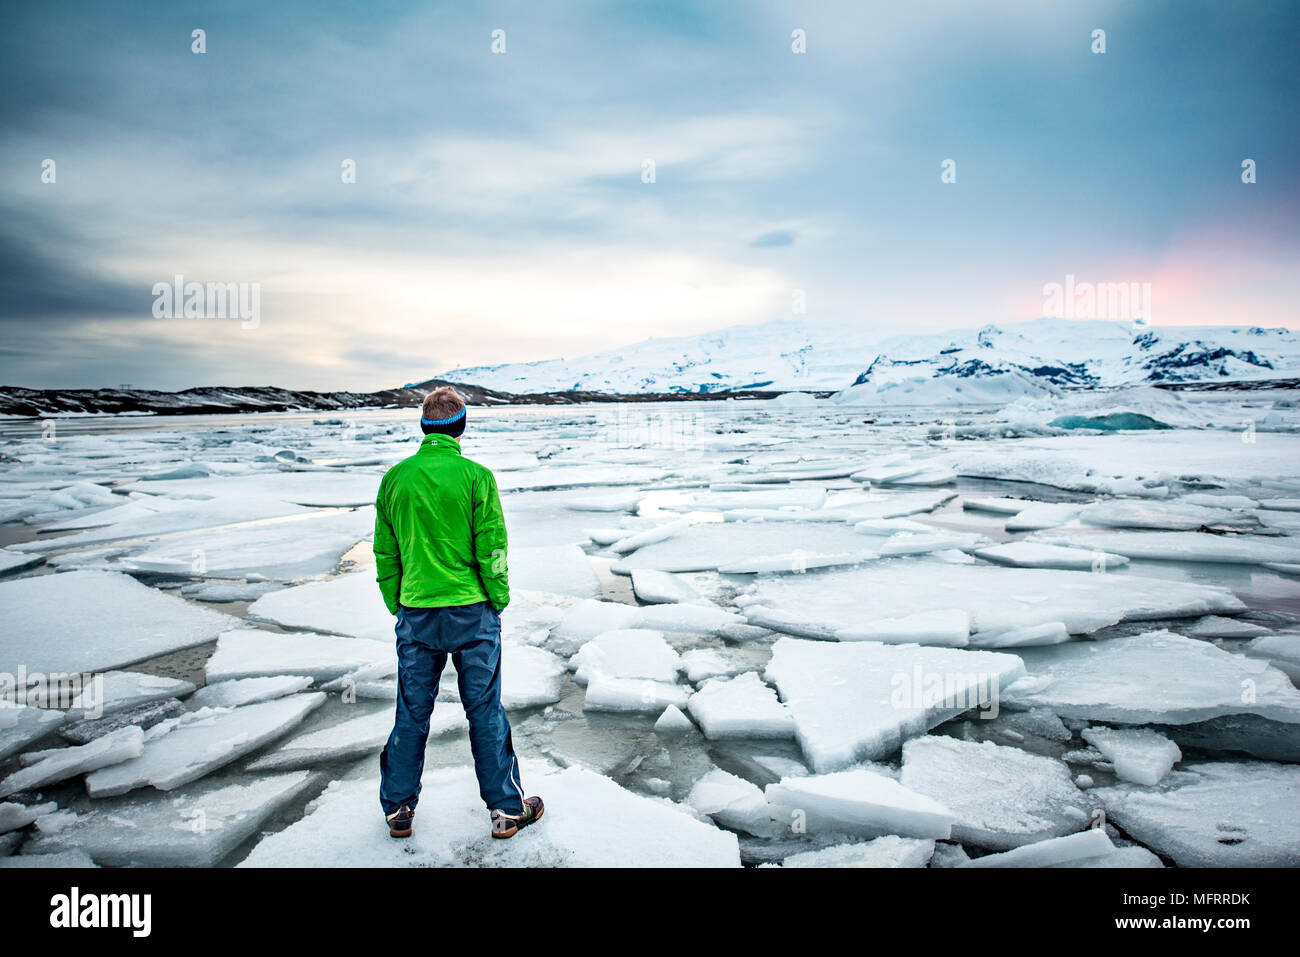 Randonneur sur un floe, glacier lagoon, le lac glaciaire Jökulsárlón, coucher de soleil, extrémité sud de l'Islande du sud-est, Vatnajökull Banque D'Images